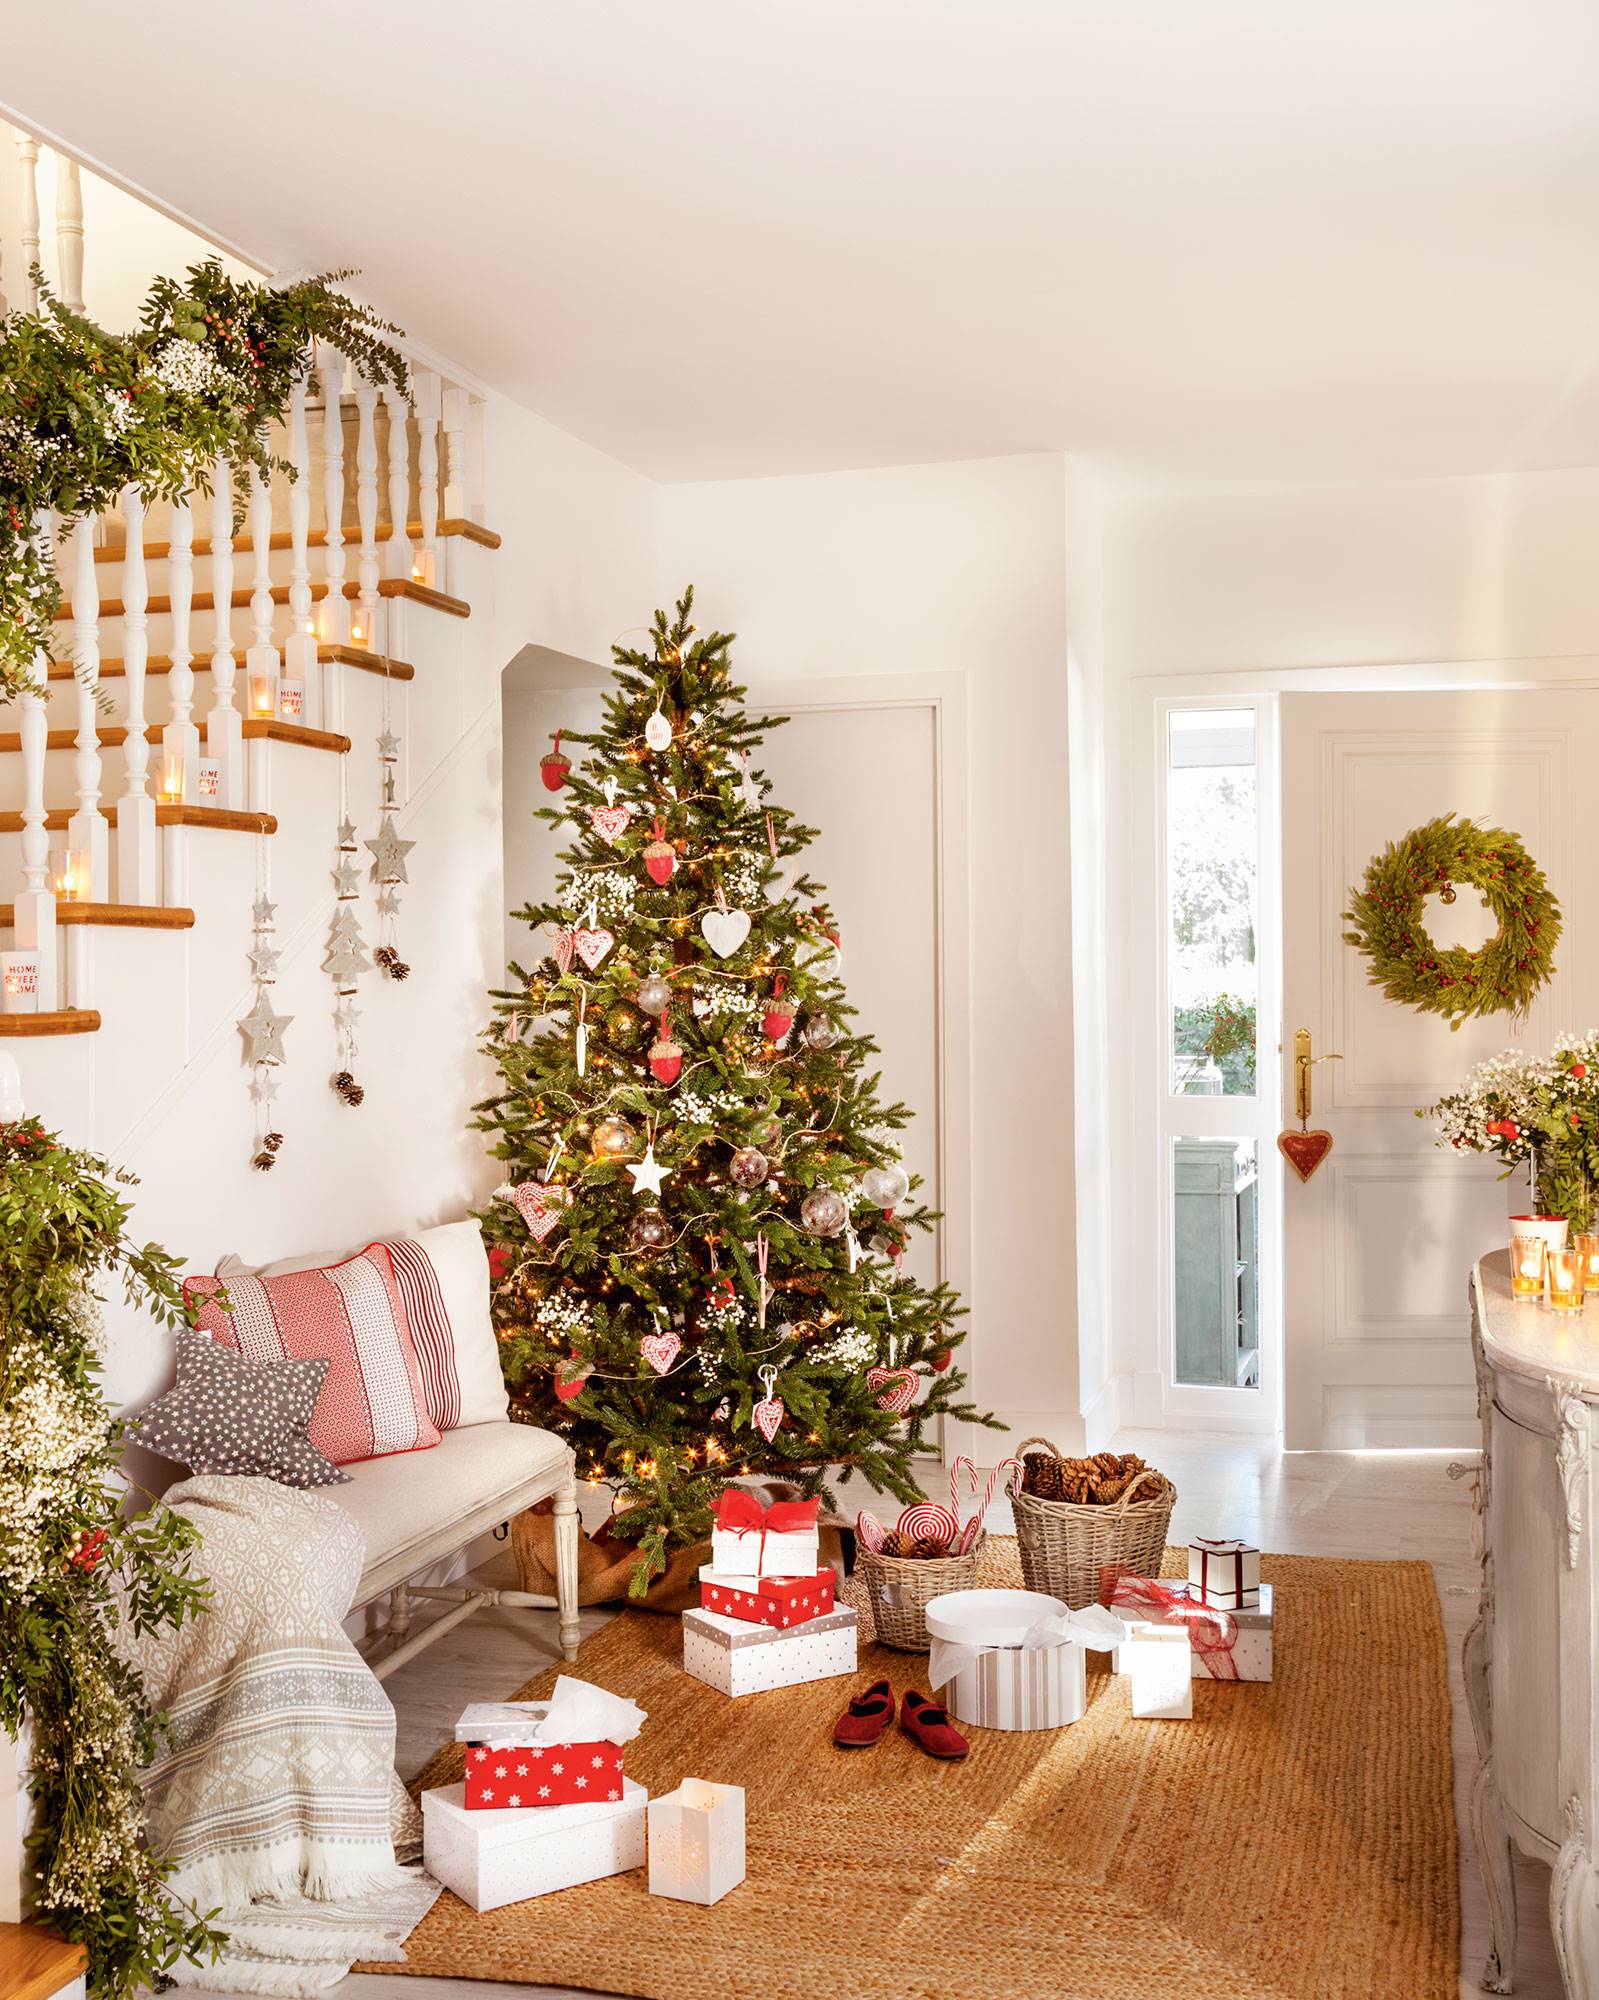 recibidor blanco con escaleras y árbol de Navidad con adornos rojos